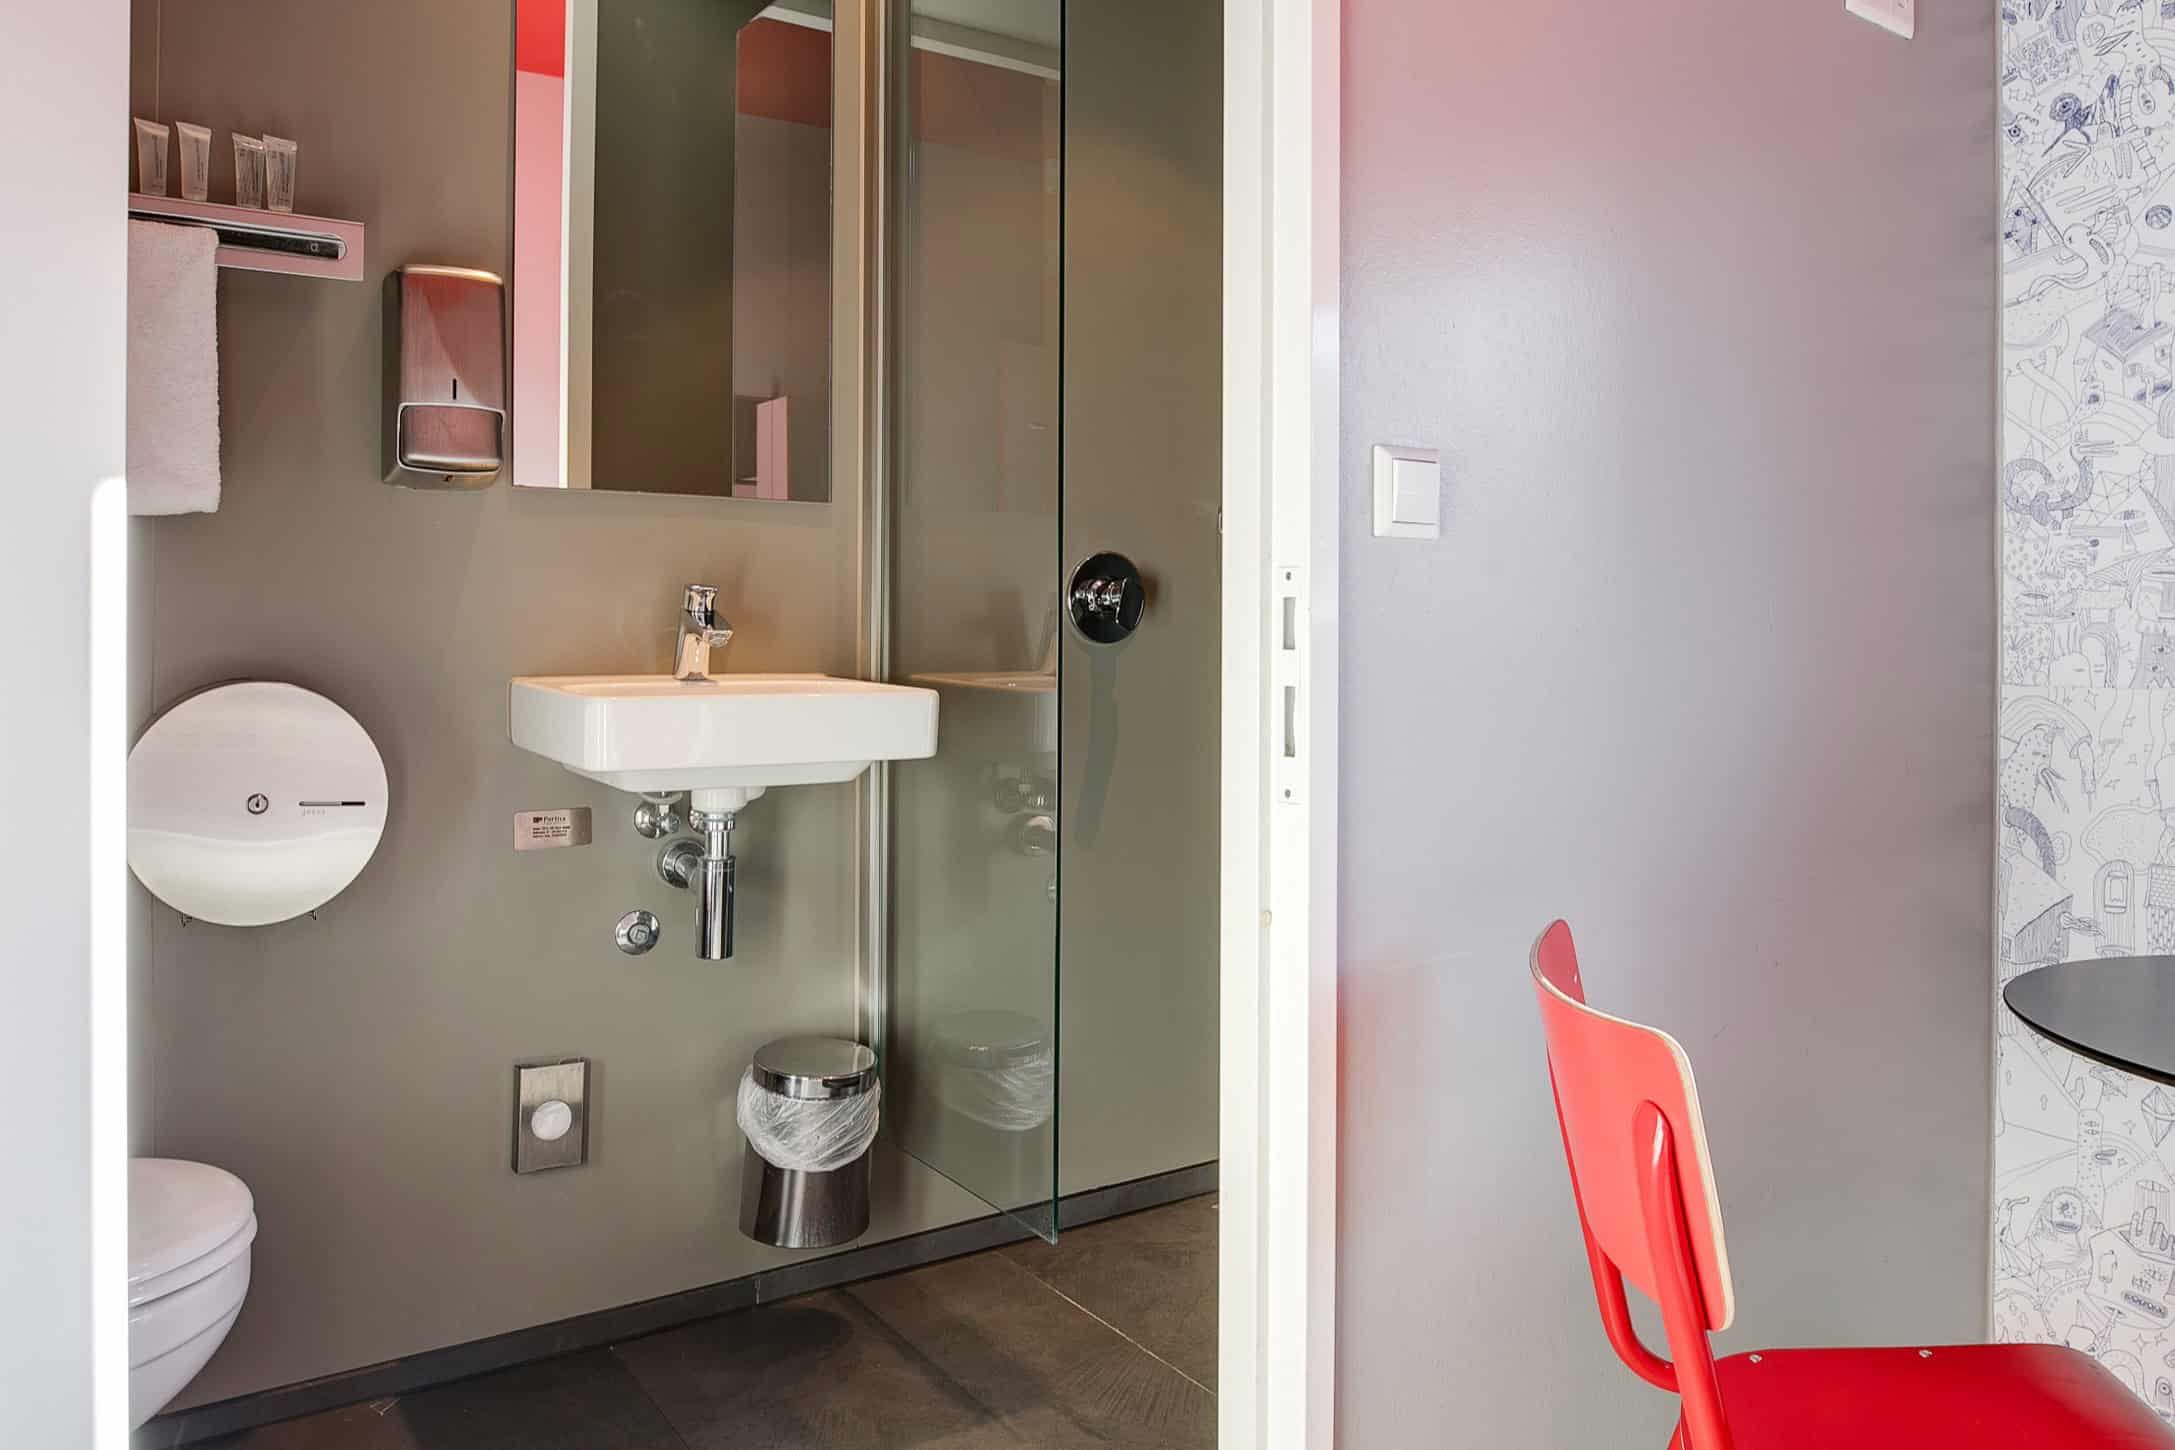 Private room en-suite bathroom and shower at Clinknoord hostel Amsterdam